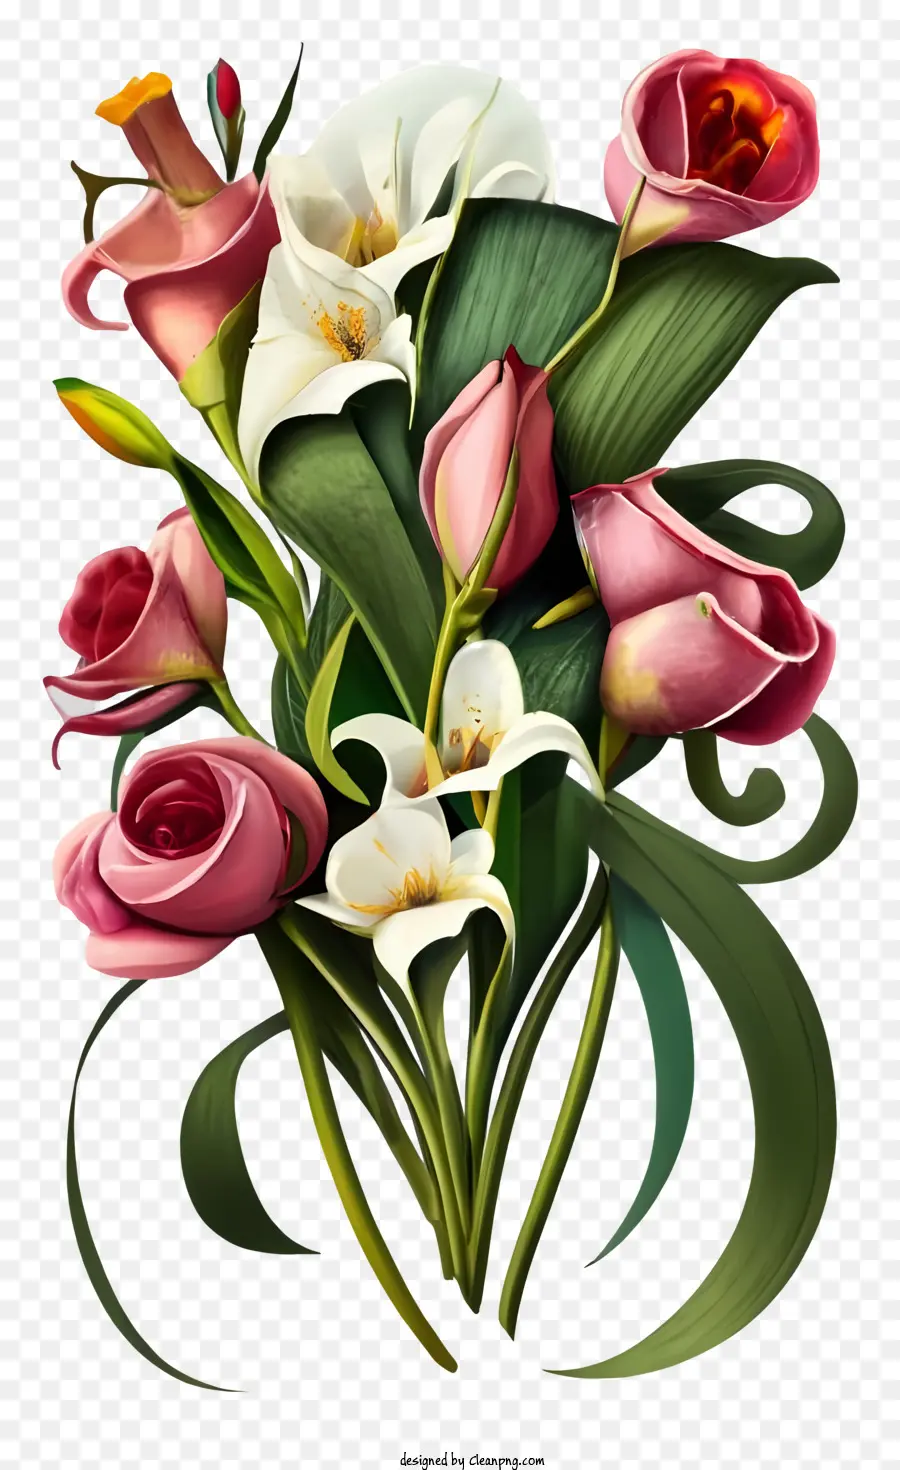 Rosenstrauß von Rosen und Lilien rosa und weiße Blüten in einer Vase -Realistischen Stilmalerei lebendige und lebensee Farben - Realistisches Gemälde des Blumenstraußes mit rosa Blumen